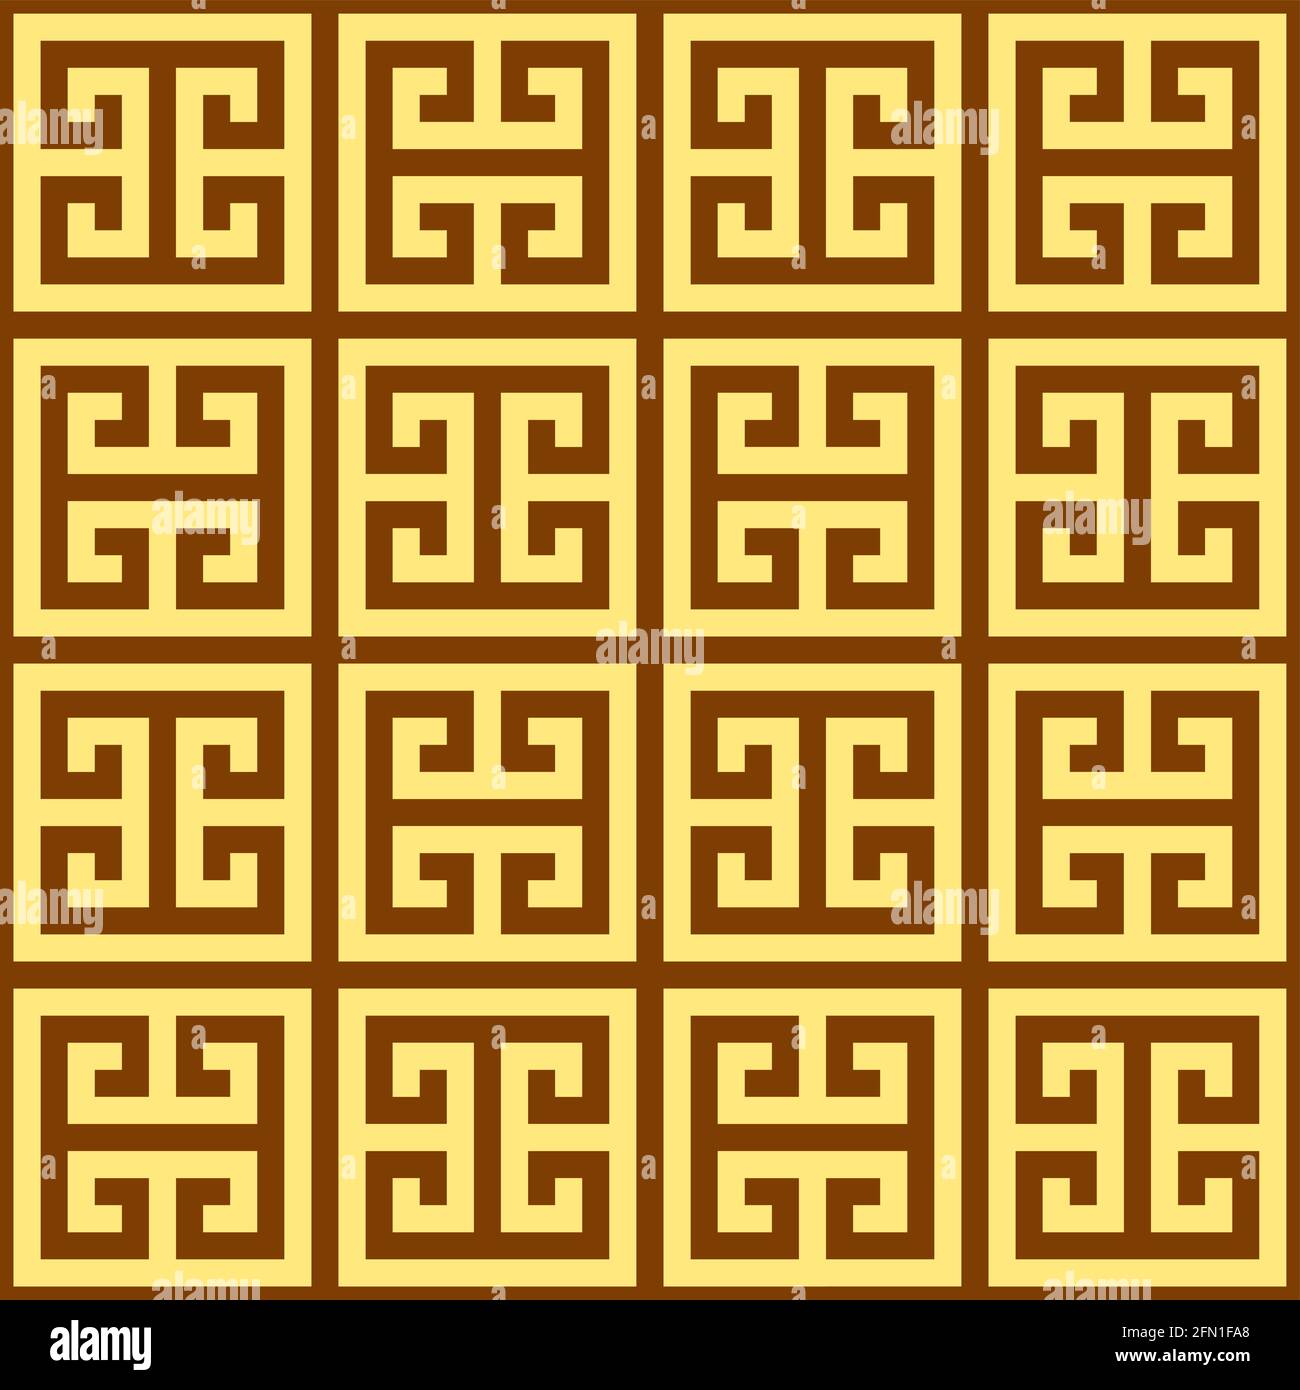 Griechischer Schlüssel nahtloses Vektor-geometrisches Muster, inspiriert vom antiken Griechenland Keramik und Keramik Kunst in braun und gelb Stock Vektor